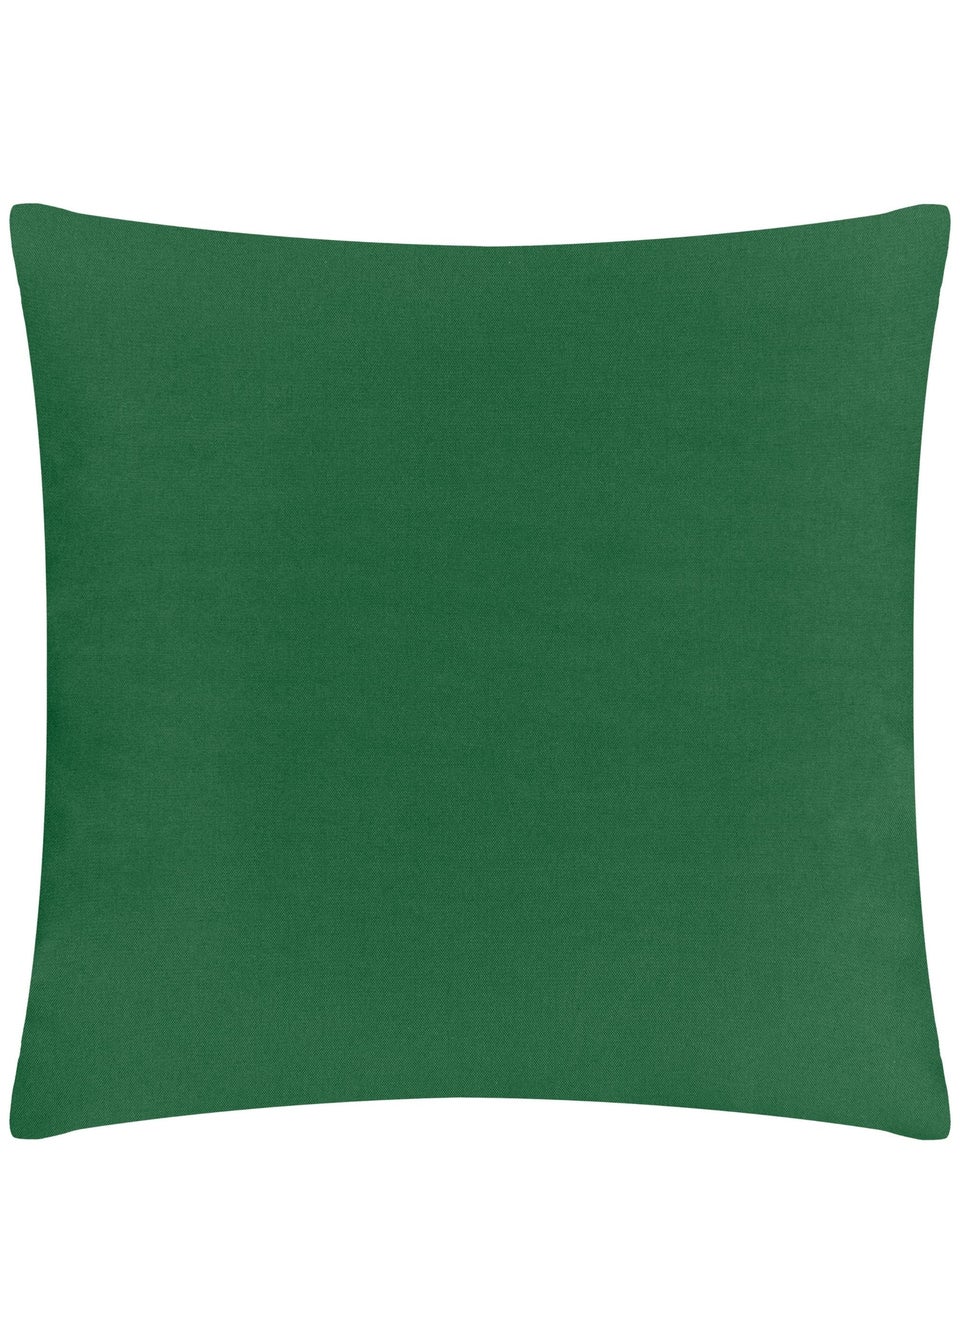 furn. Teal Marula Filled Outdoor Cushions (43cm x 43cm x 8cm)